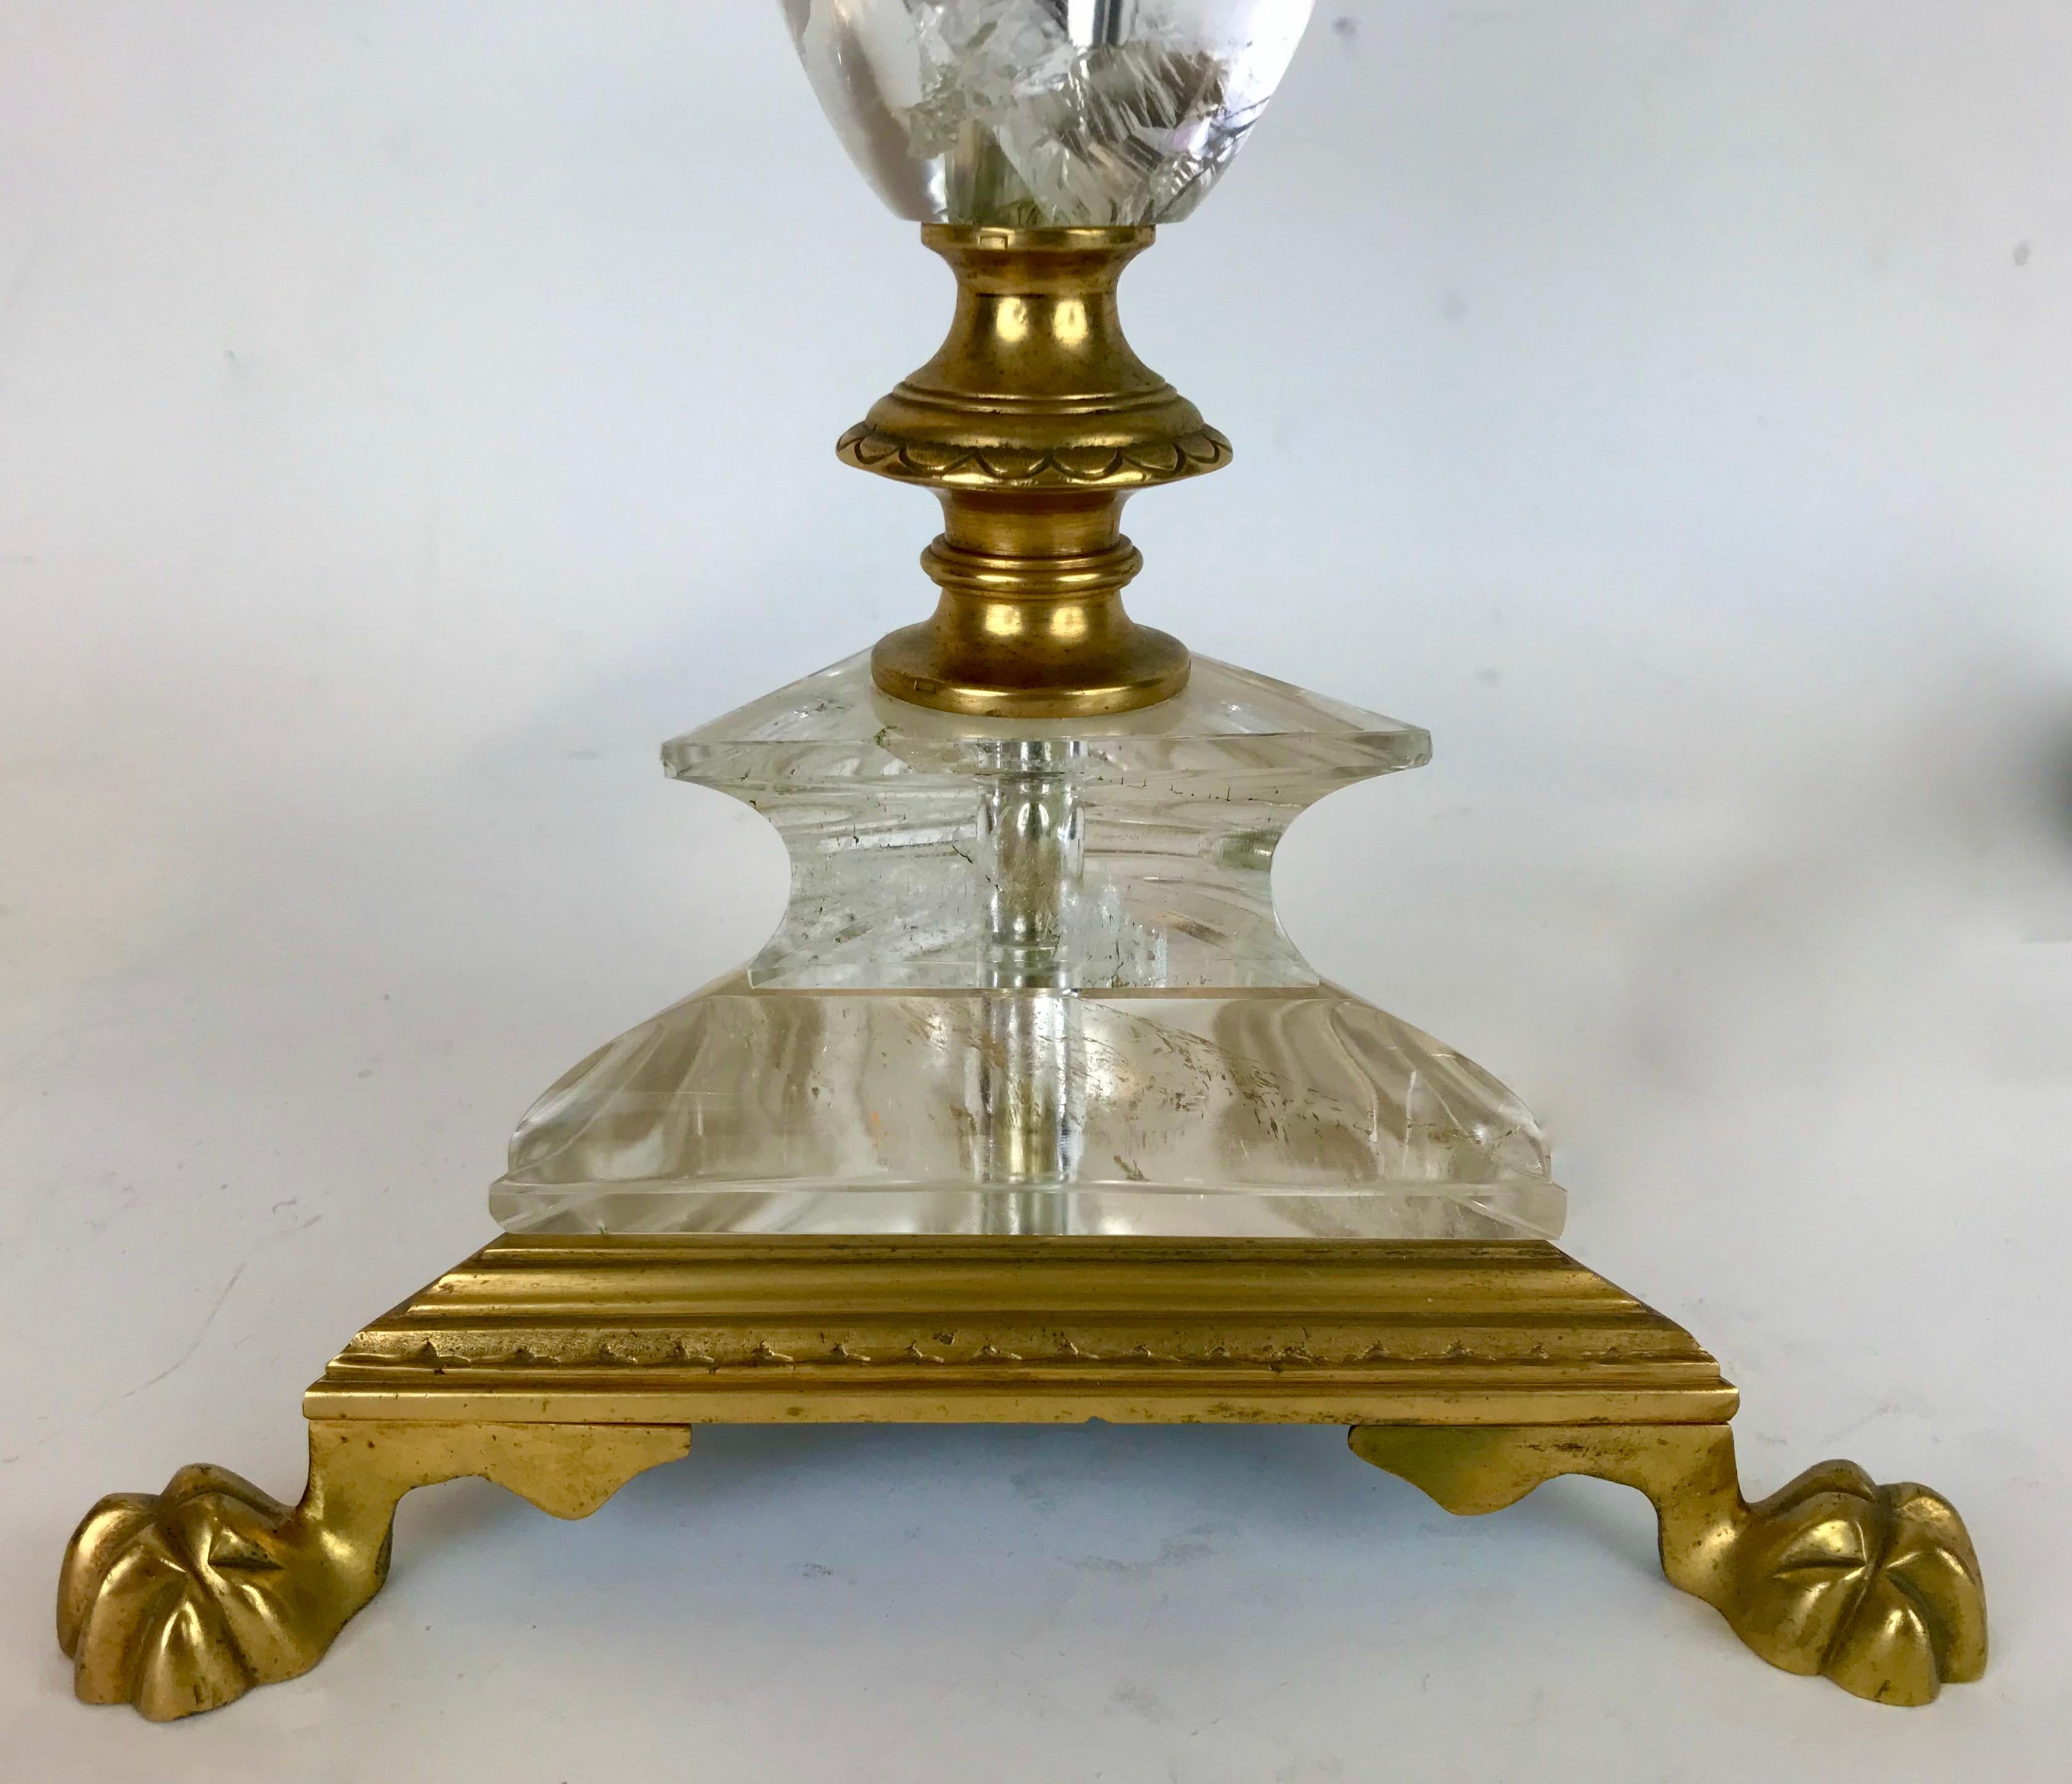 Diese fein detaillierte Lampe im Stil eines Pricketstocks besteht aus Bergkristallquarz, der mit Bronzebeschlägen auf einem dreieckigen Sockel montiert ist, der in Tatzenfüßen endet.